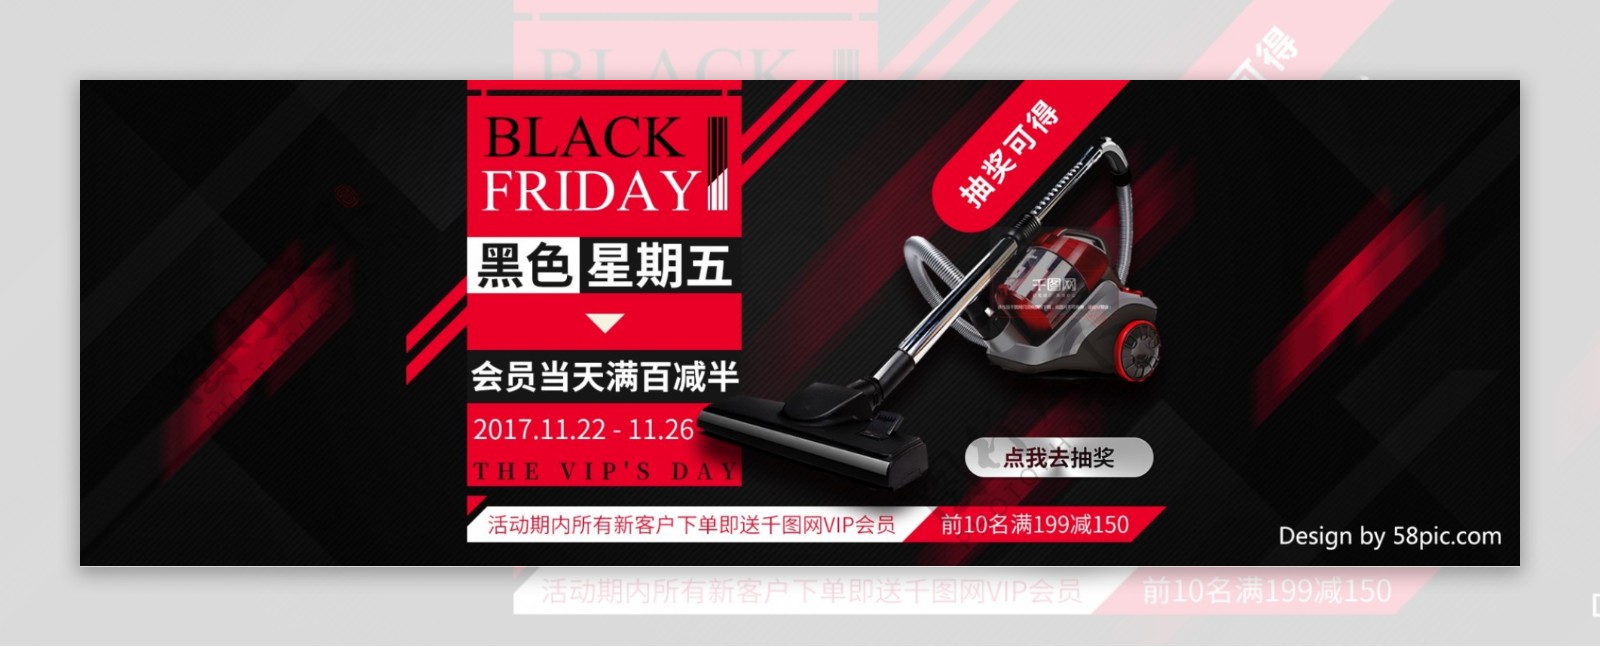 黑色星期五黑红色活动海报天猫促销banner